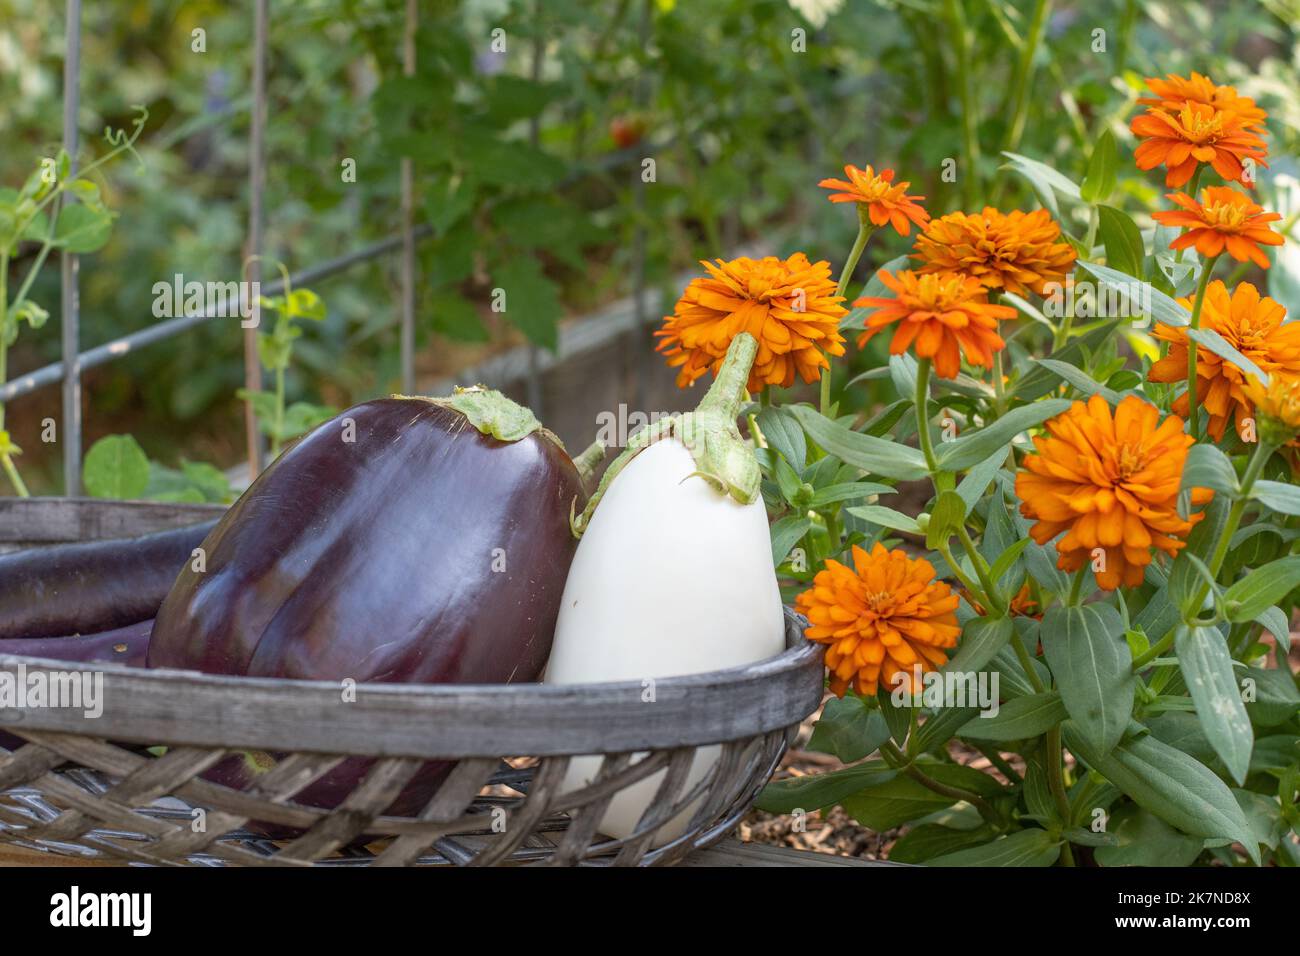 Auberginen in einem gewebten Korb vor orangen Zinnien und einem Gitter Stockfoto